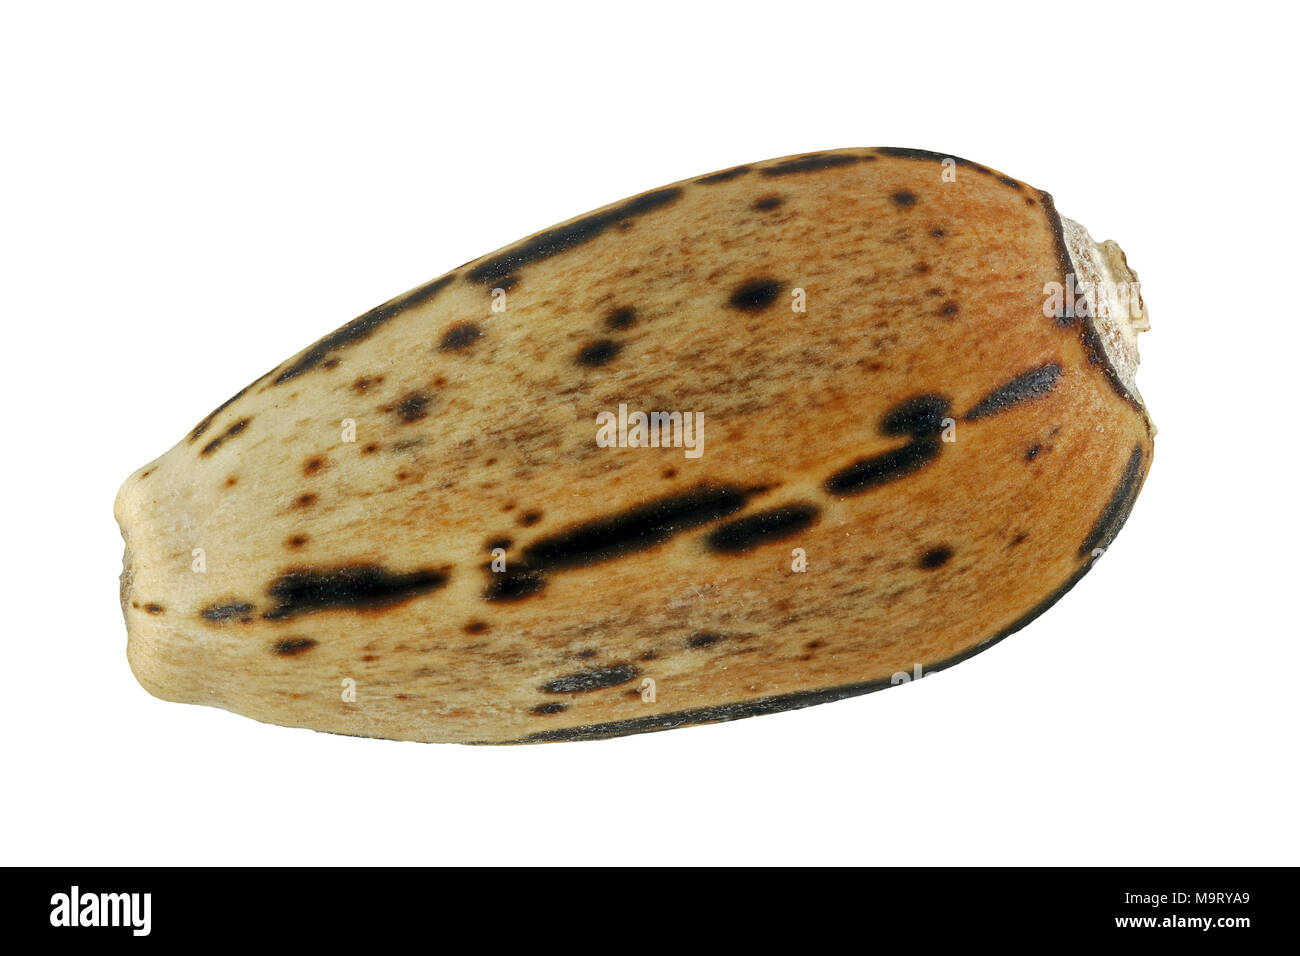 Cynara scolymus, l'artichaut, Artischocke, semences, Close up, le calibre des semences 8 mm Banque D'Images